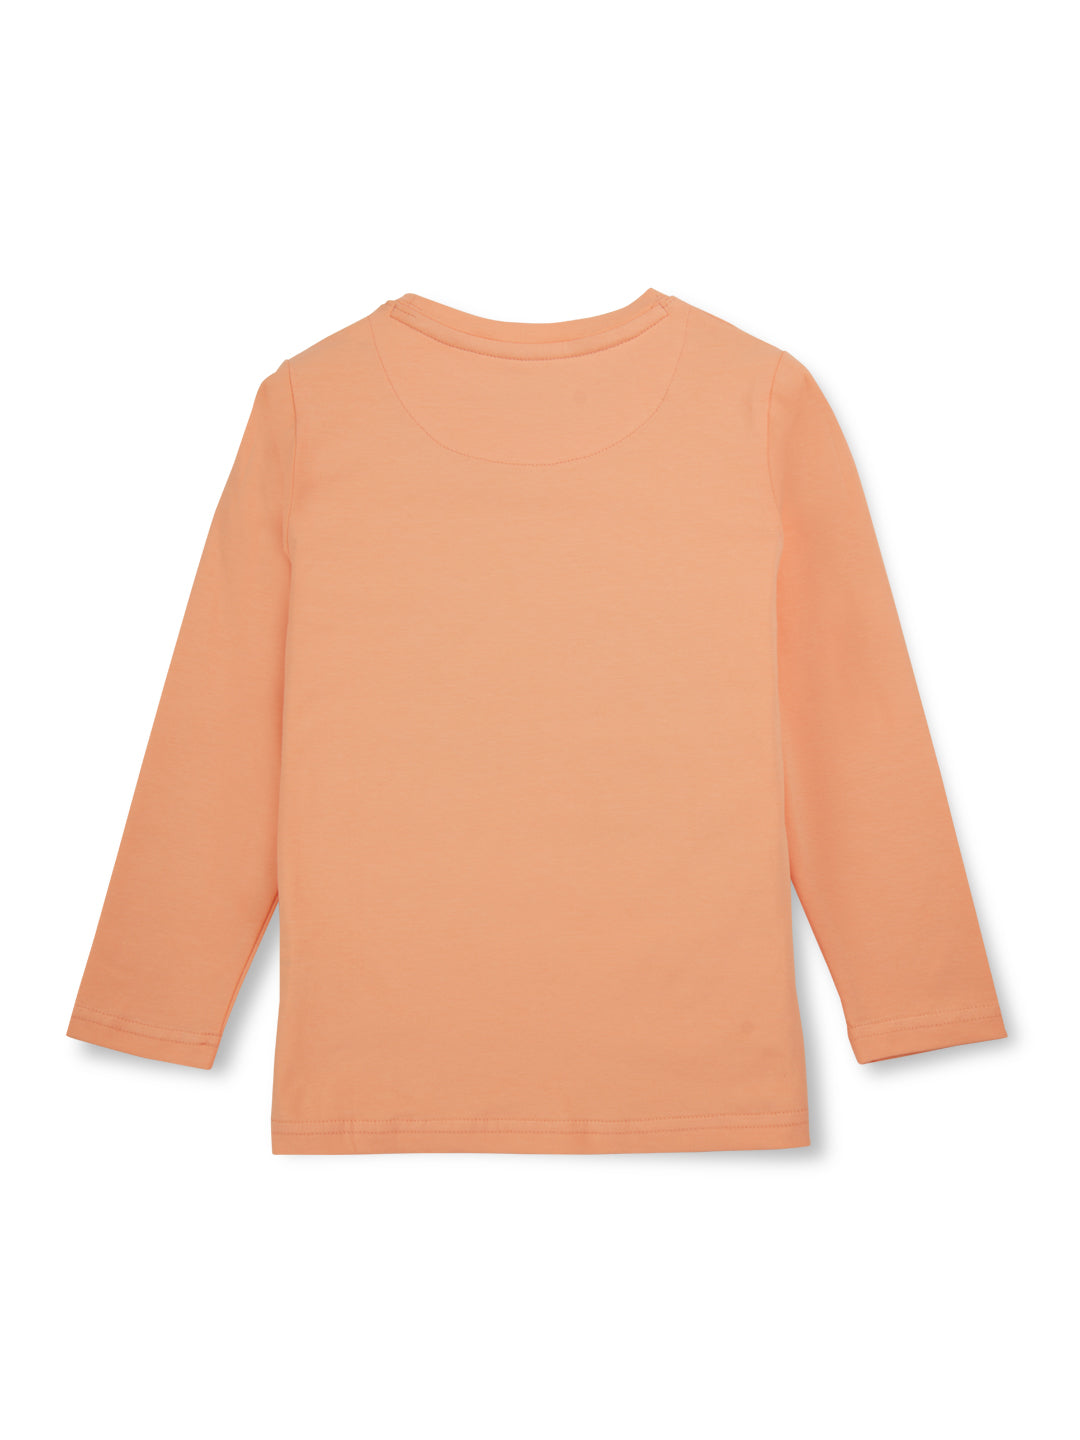 Girls Orange Printed Cotton Knits Top